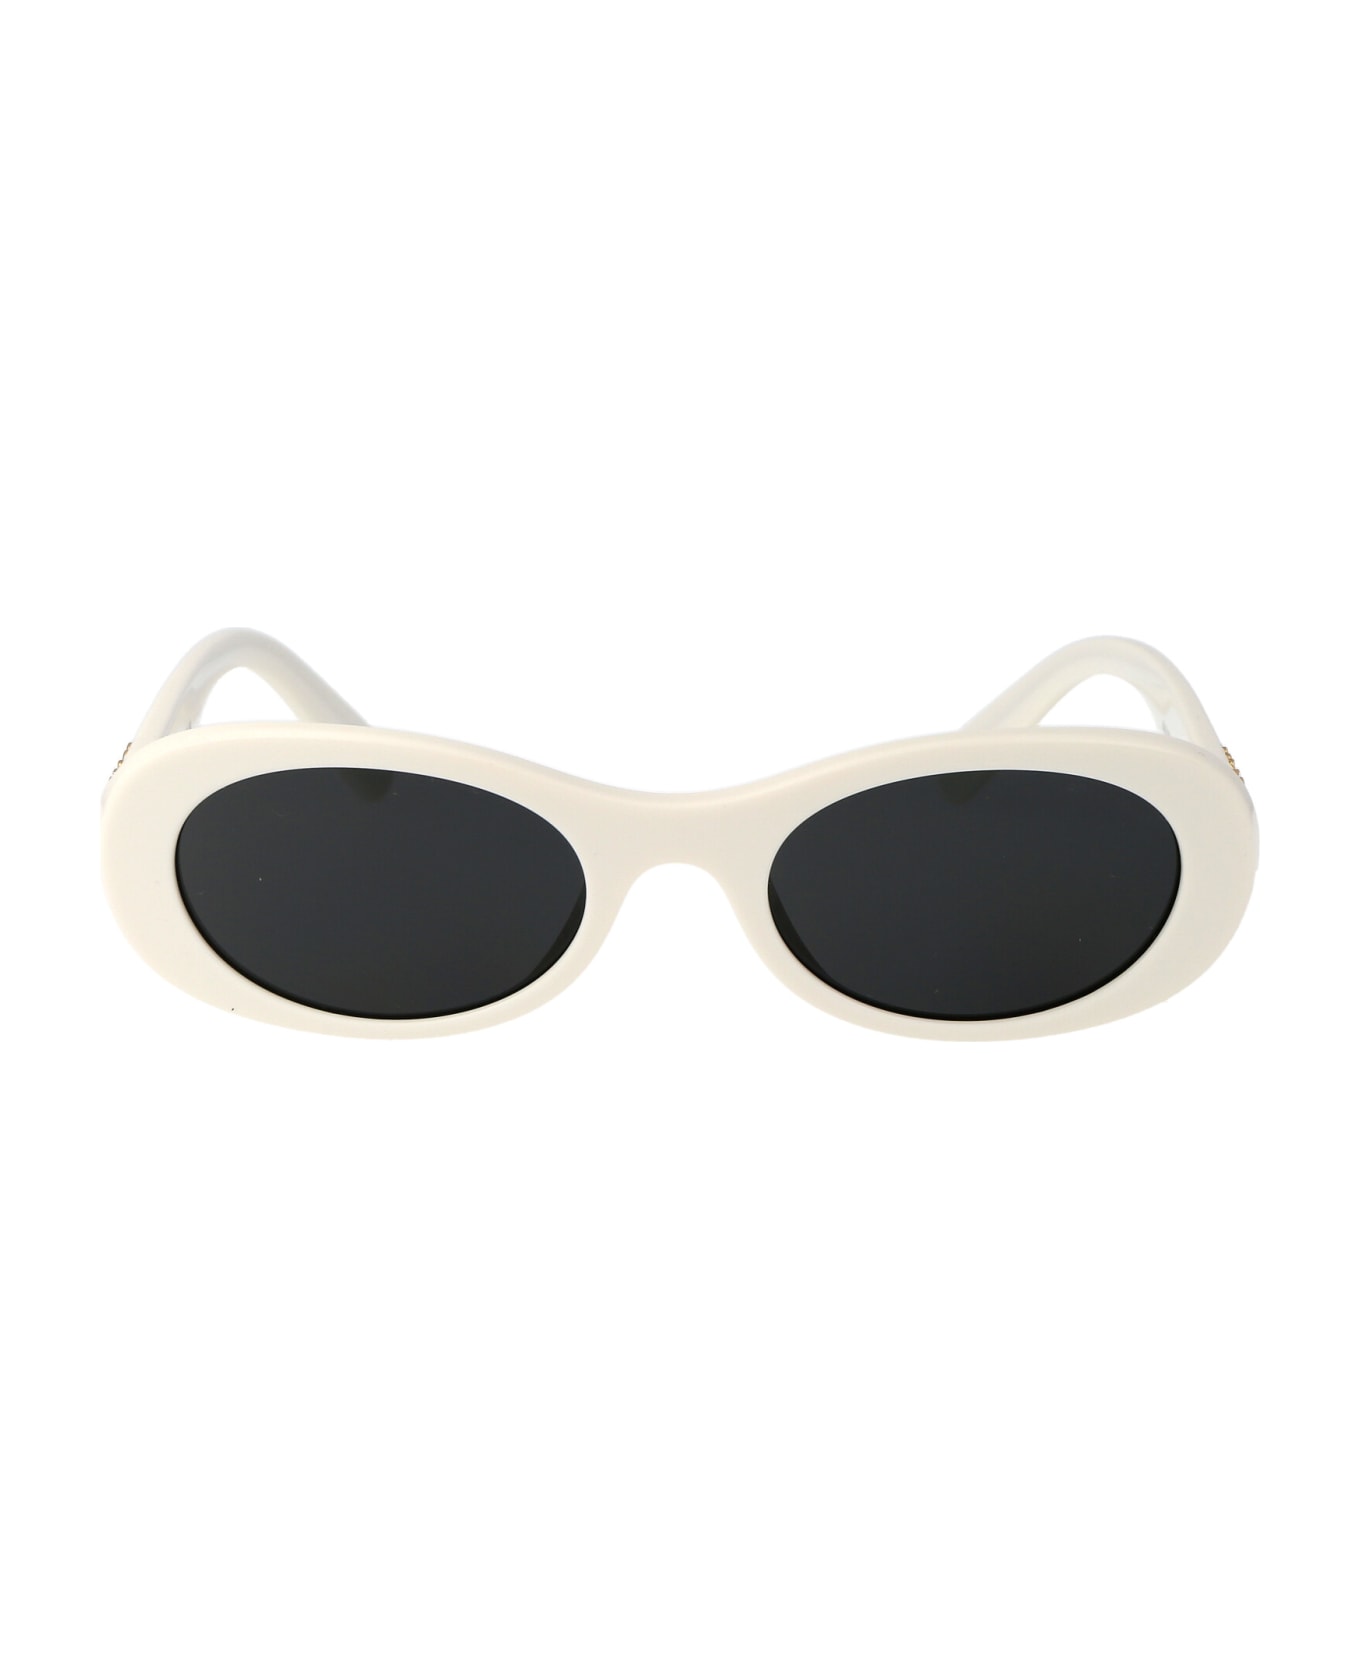 Miu Miu Eyewear 0mu 06zs Sunglasses - 1425S0 White Ivory